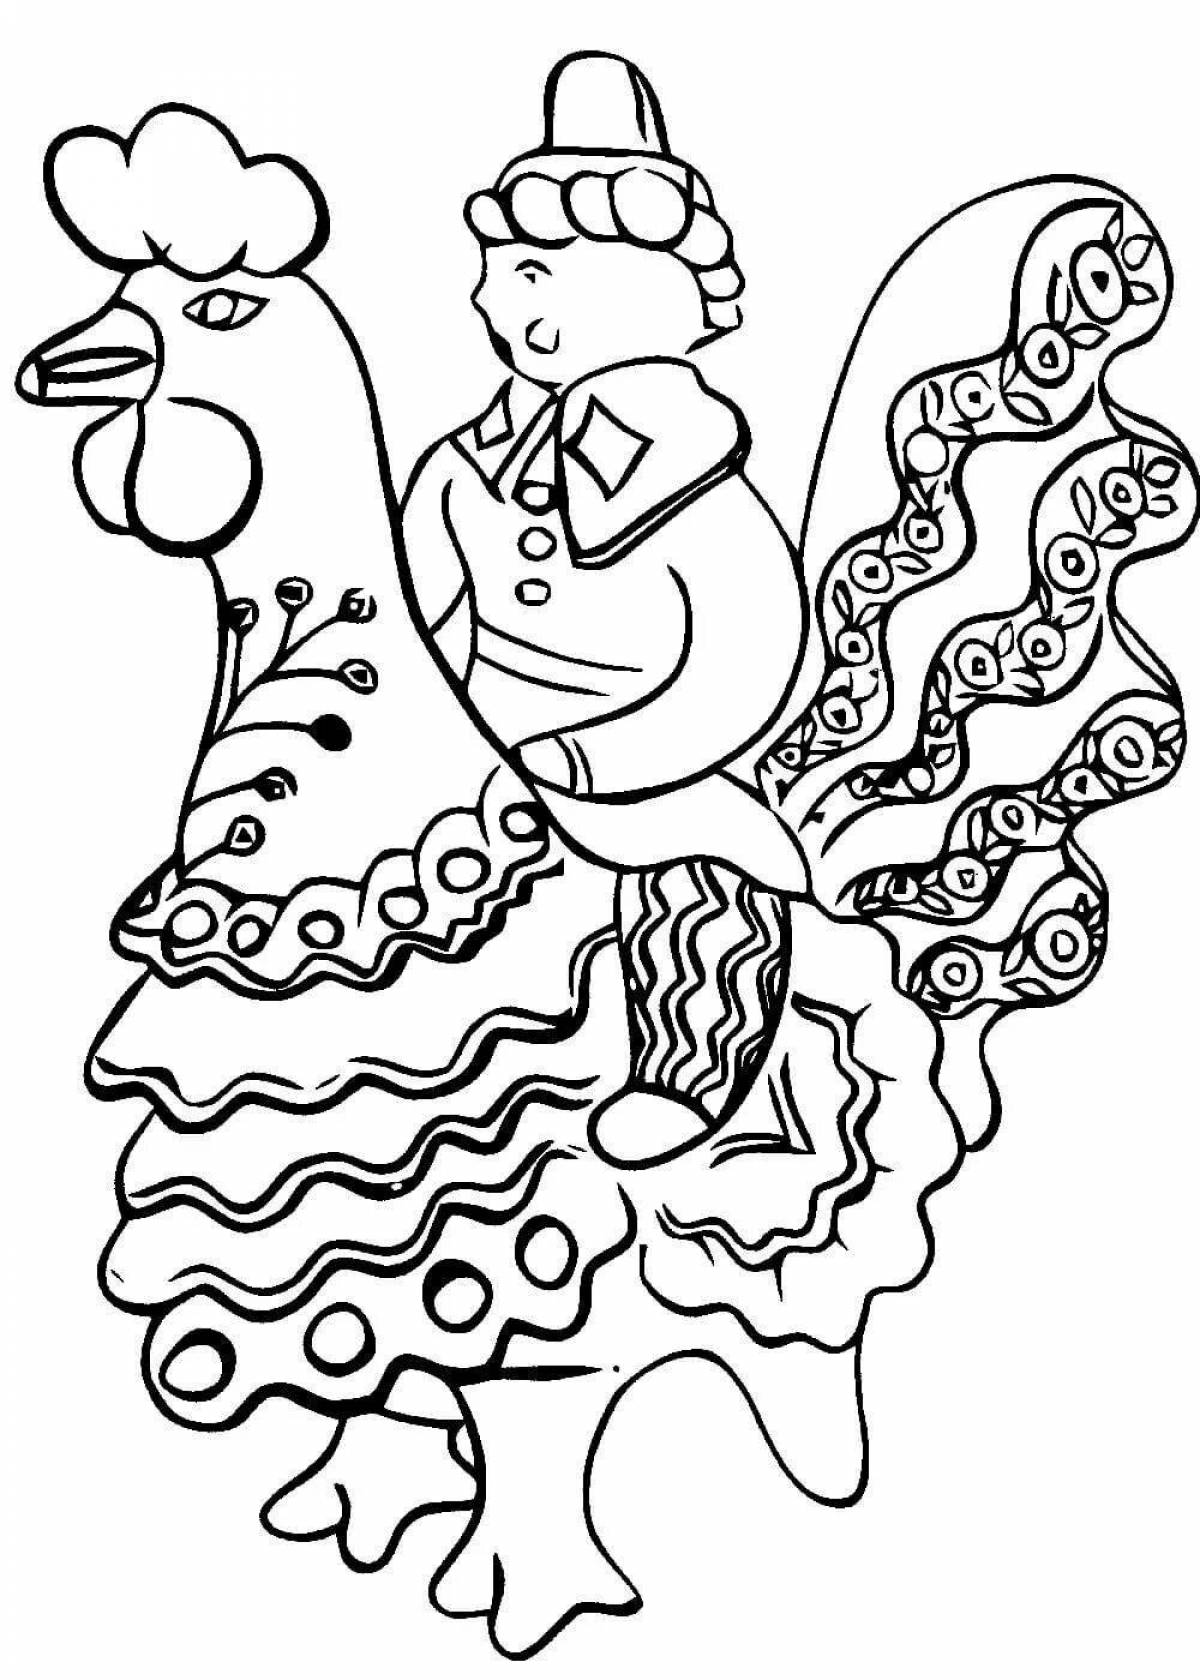 Увлекательная раскраска дымковского петуха для дошкольников